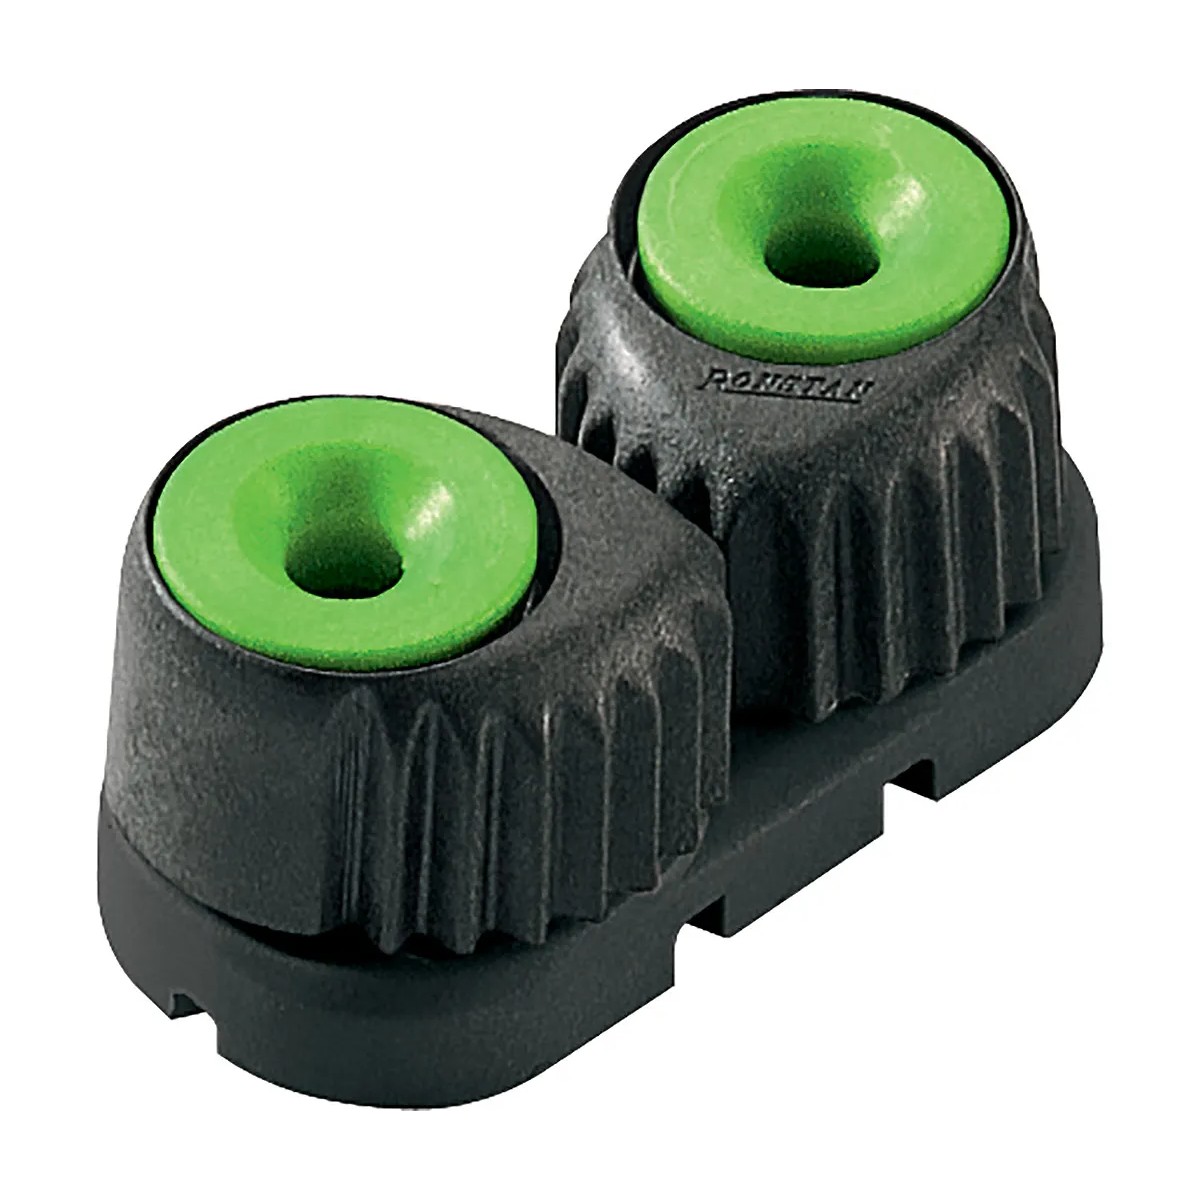 Стопор кулачковый C-Cleat Small на шарикоподшипниках Ronstan RF5400G трос Ø2-8мм 75-150кг черный-зеленый из композитного материала